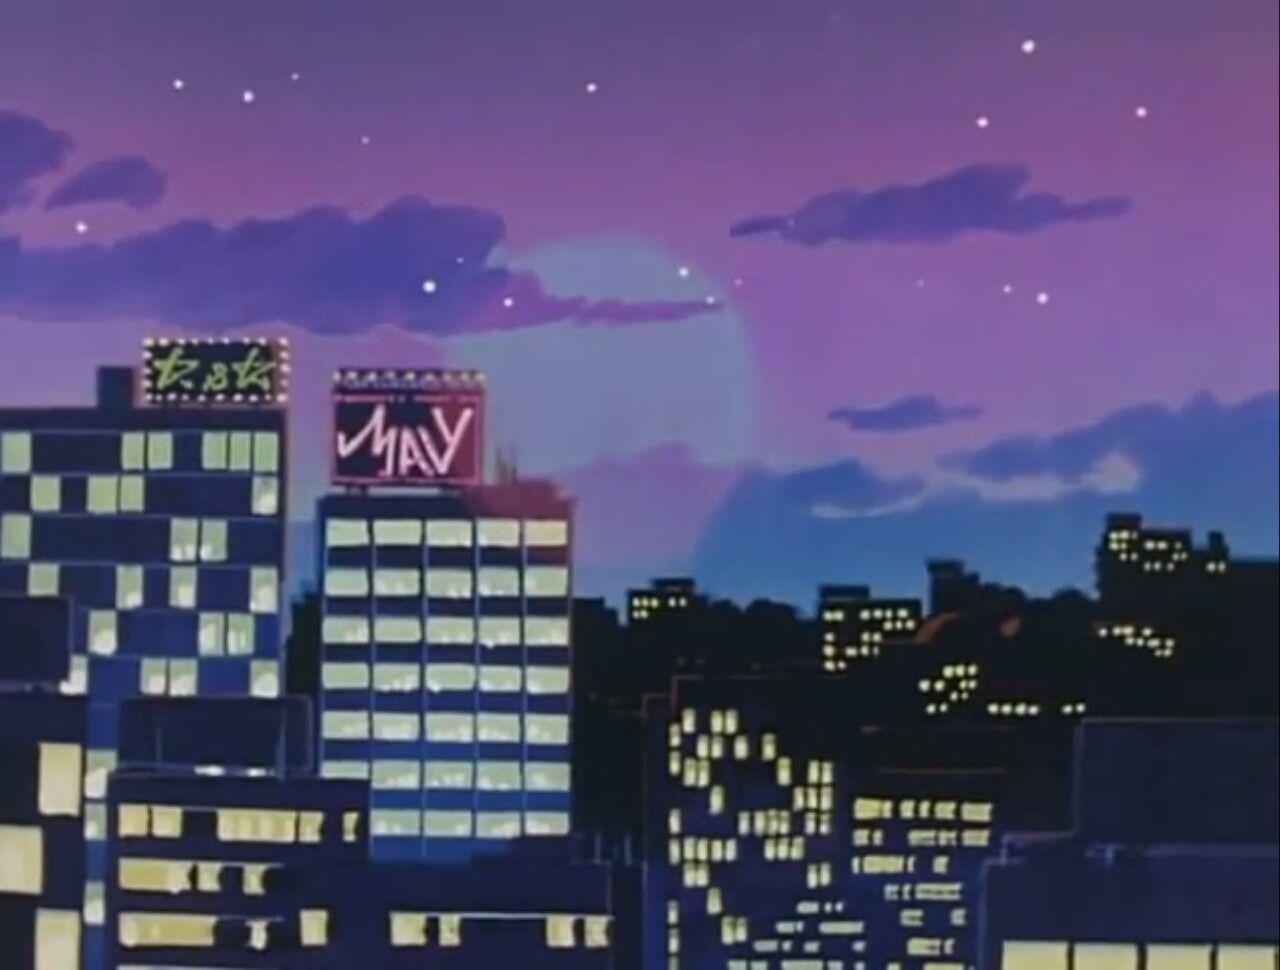 90s Anime Aesthetic Desktop Wallpaper